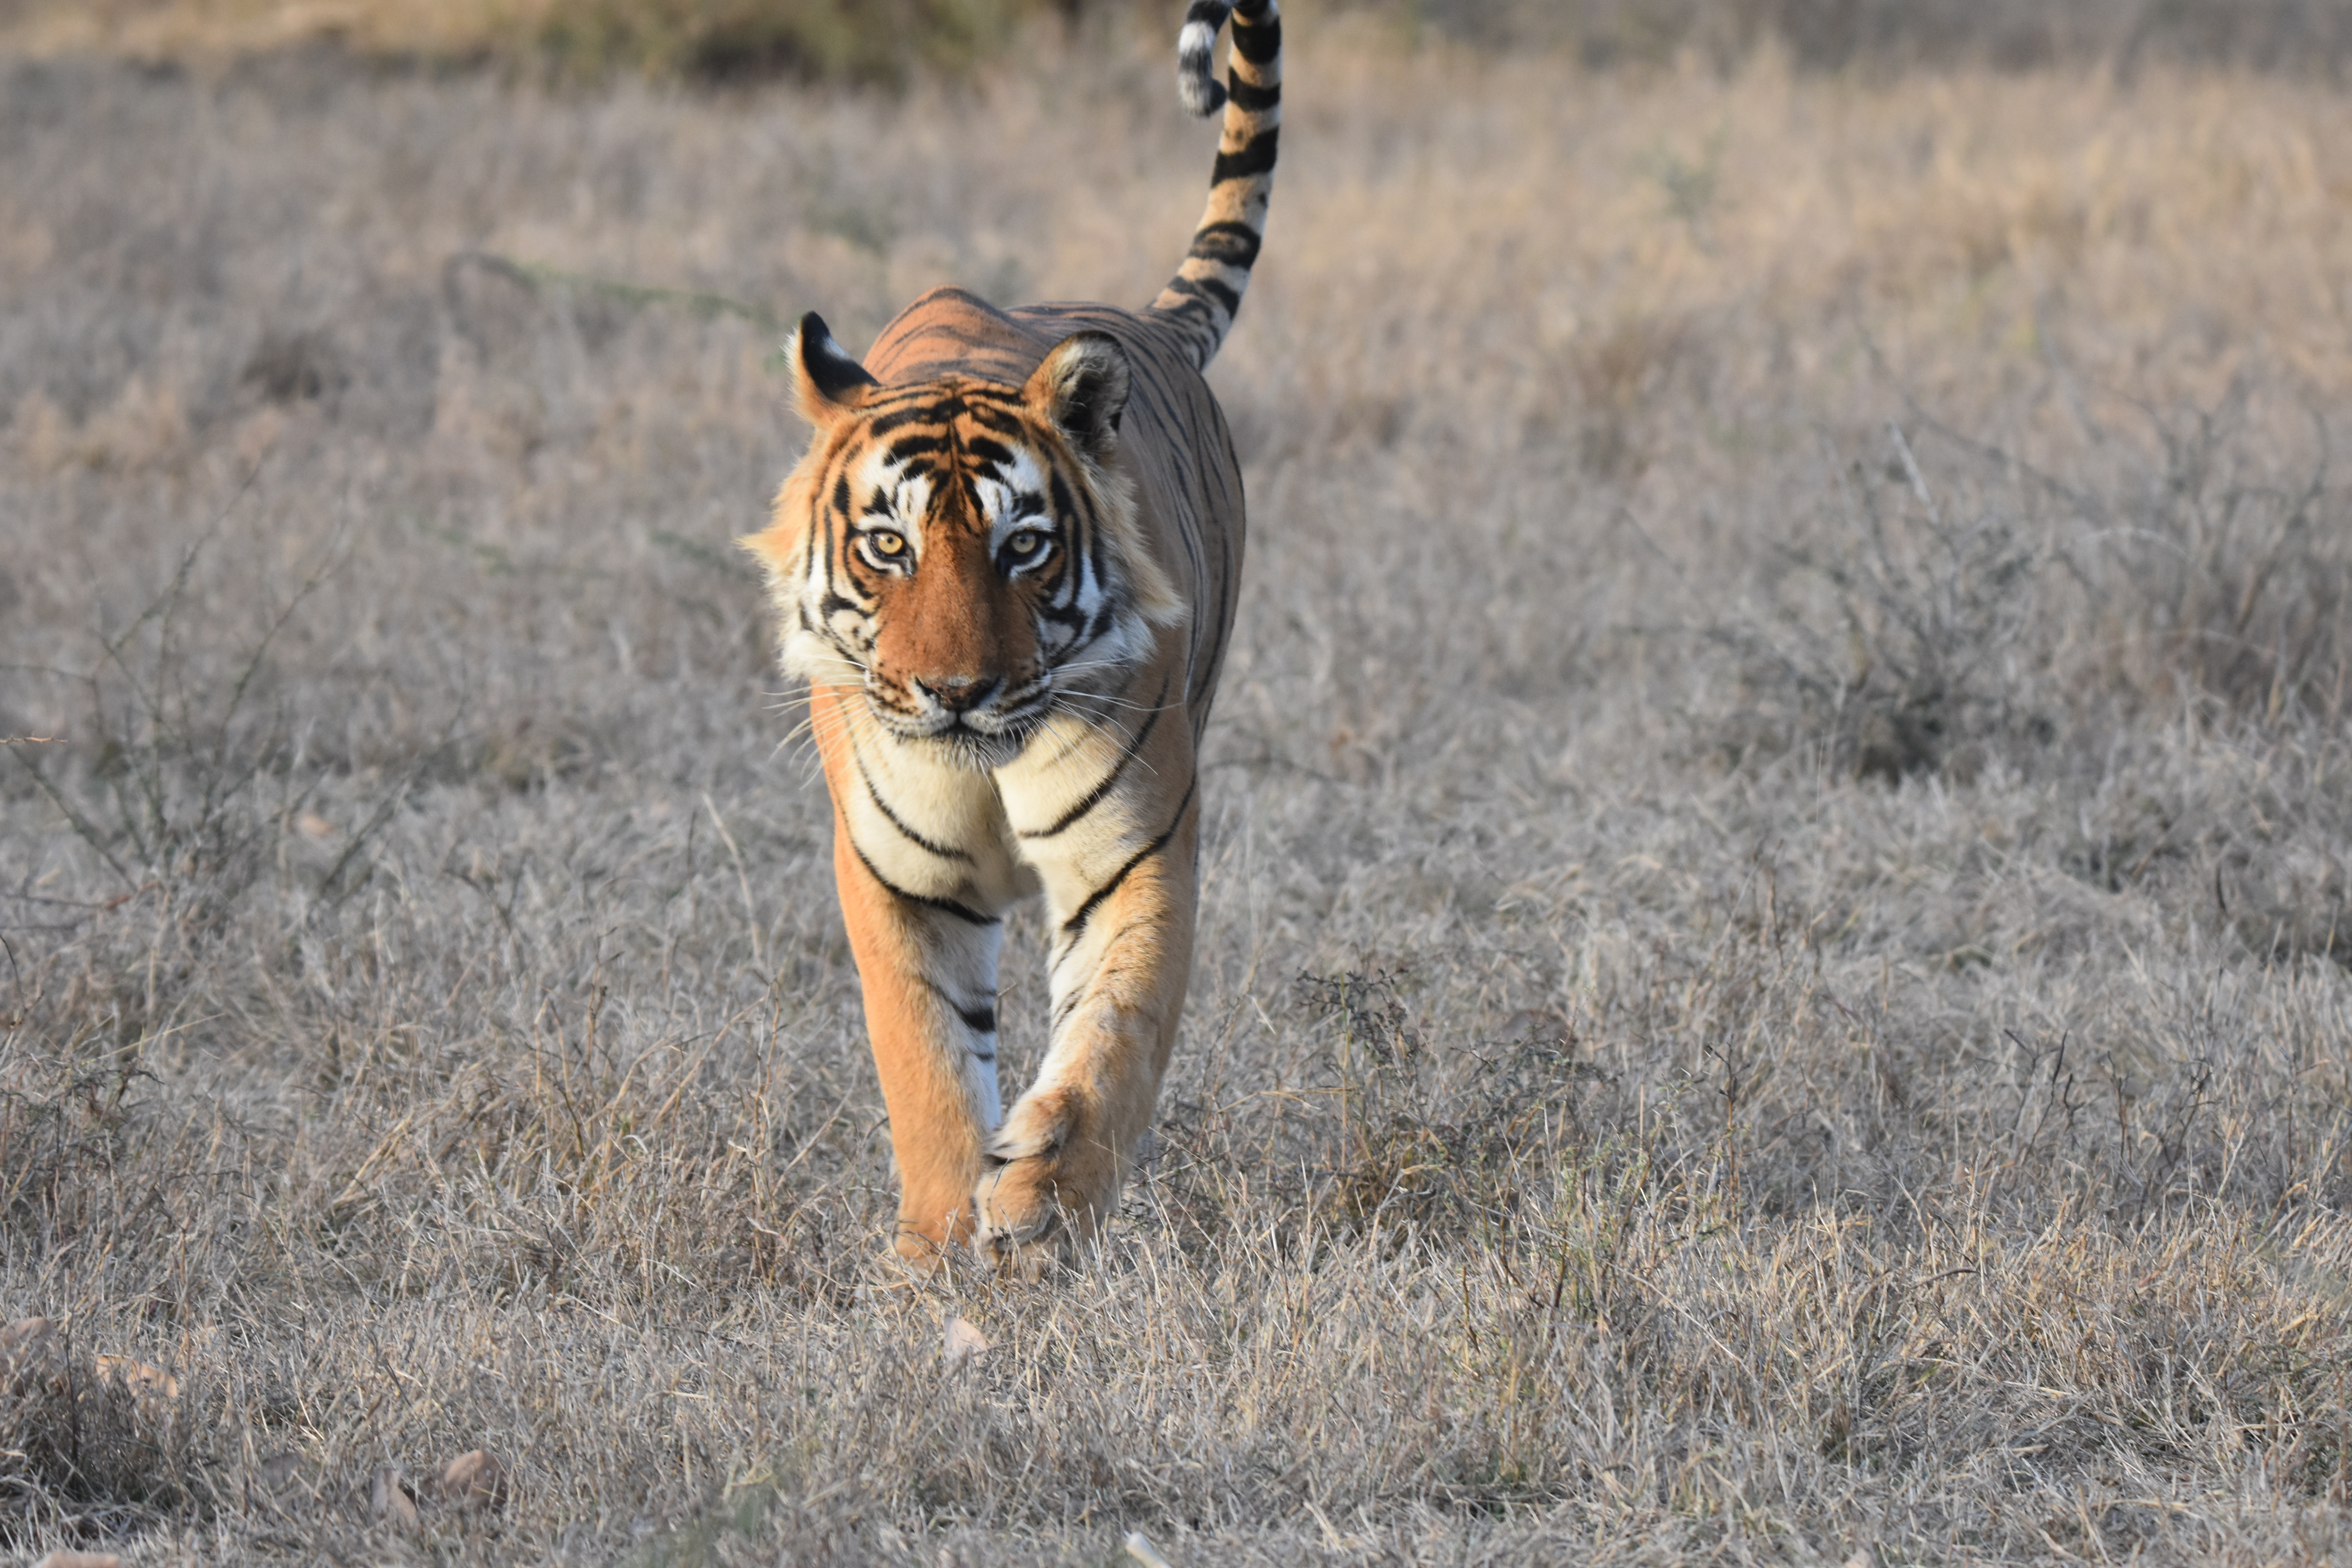 Tiger at Tadoba National Park